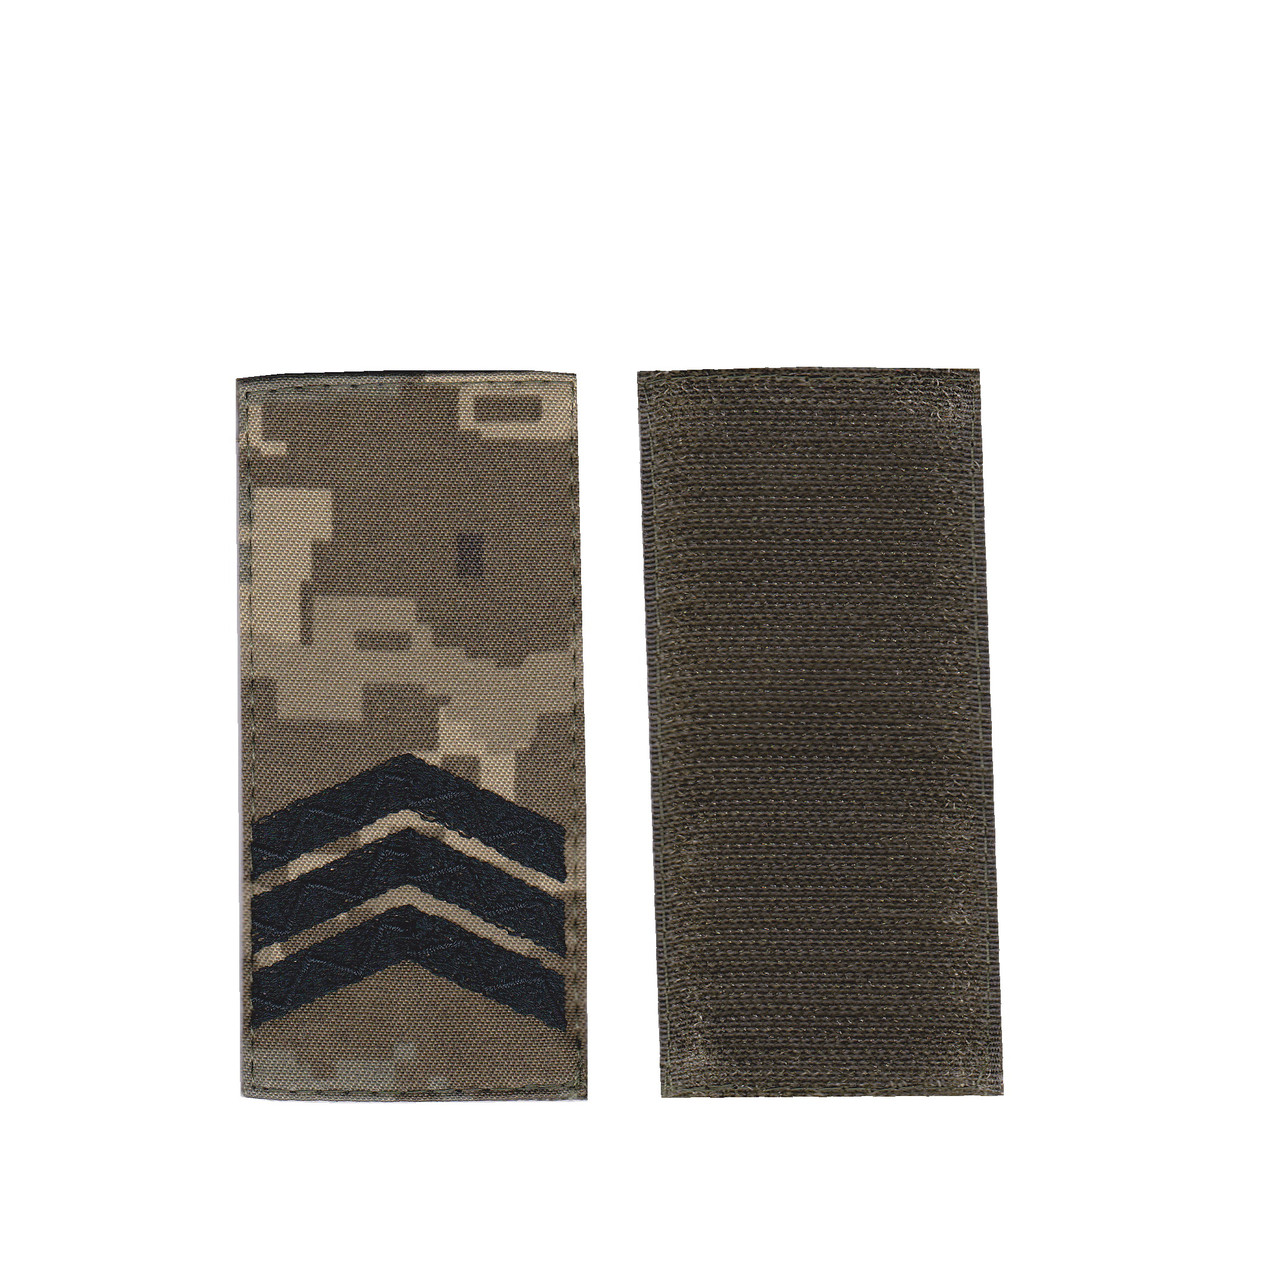 Погон сержант військовий / армійський шеврон ЗСУ, чорний колір на пікселі. 10 см * 5 см